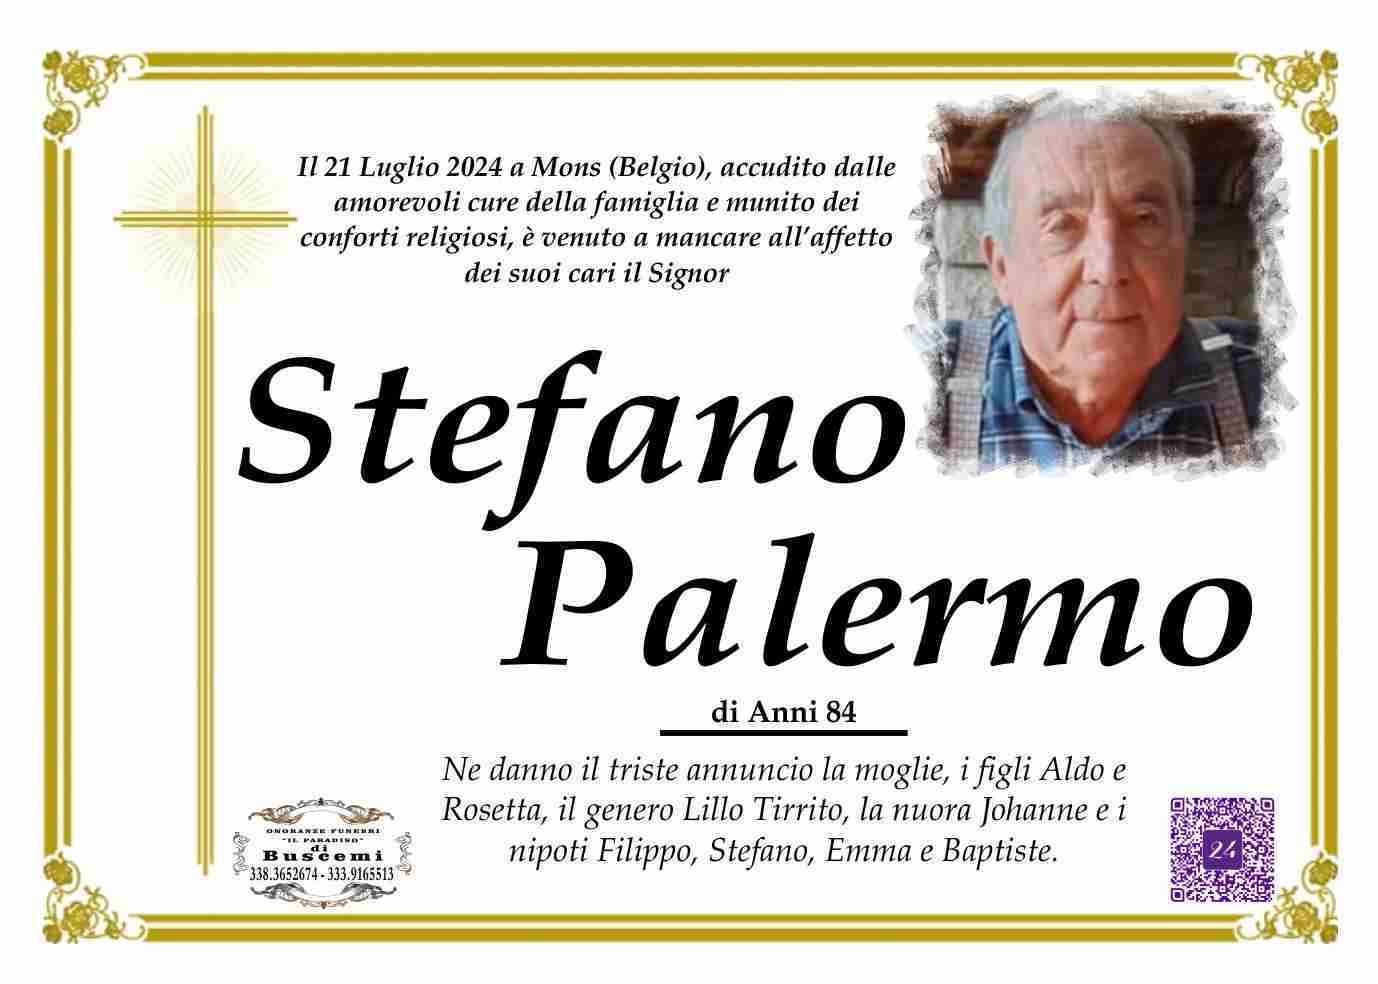 Stefano Palermo